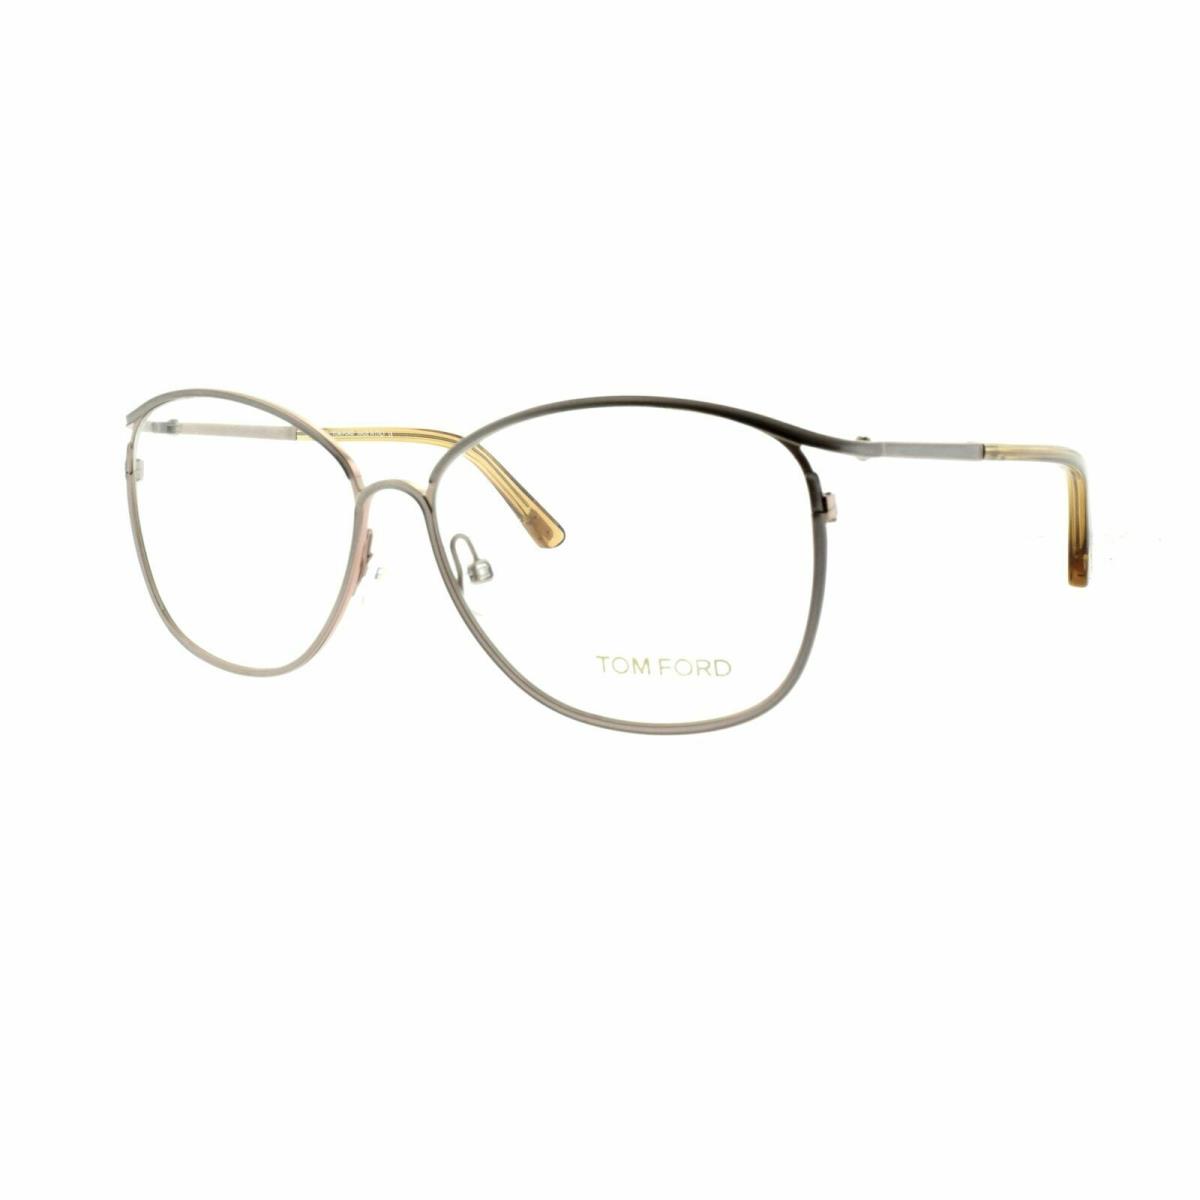 Tom Ford TF5192 034 Grey Oval Full Rim Women Optical Frames Eyeglasses